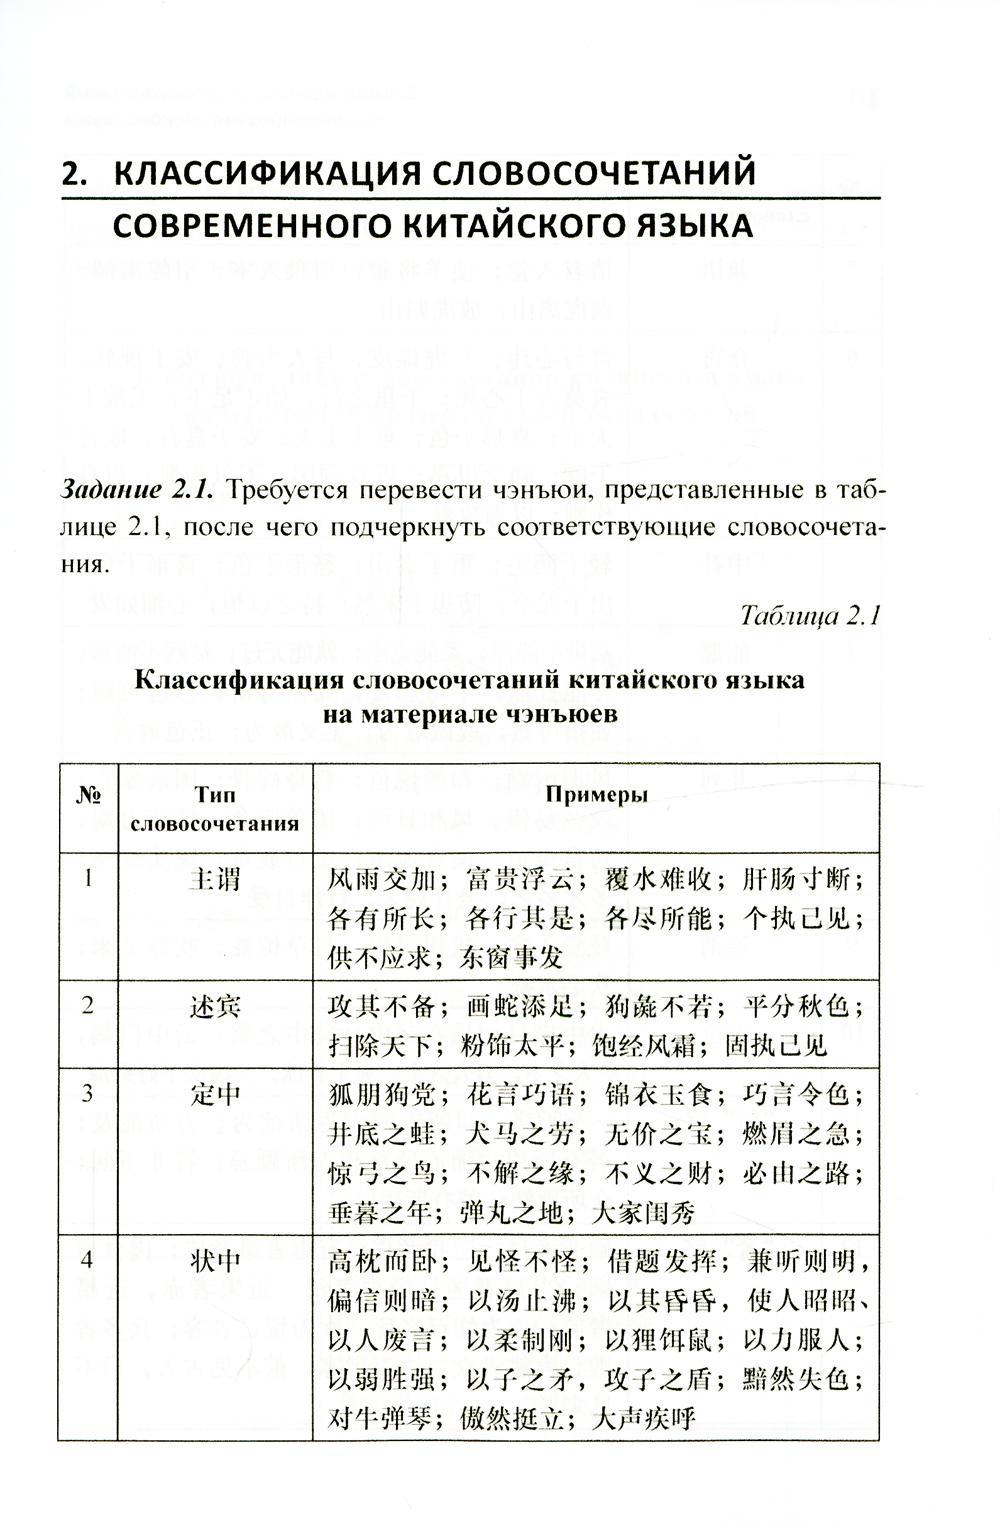 Синтаксический анализ предложиний на китайском языке различных периодов. Практикум